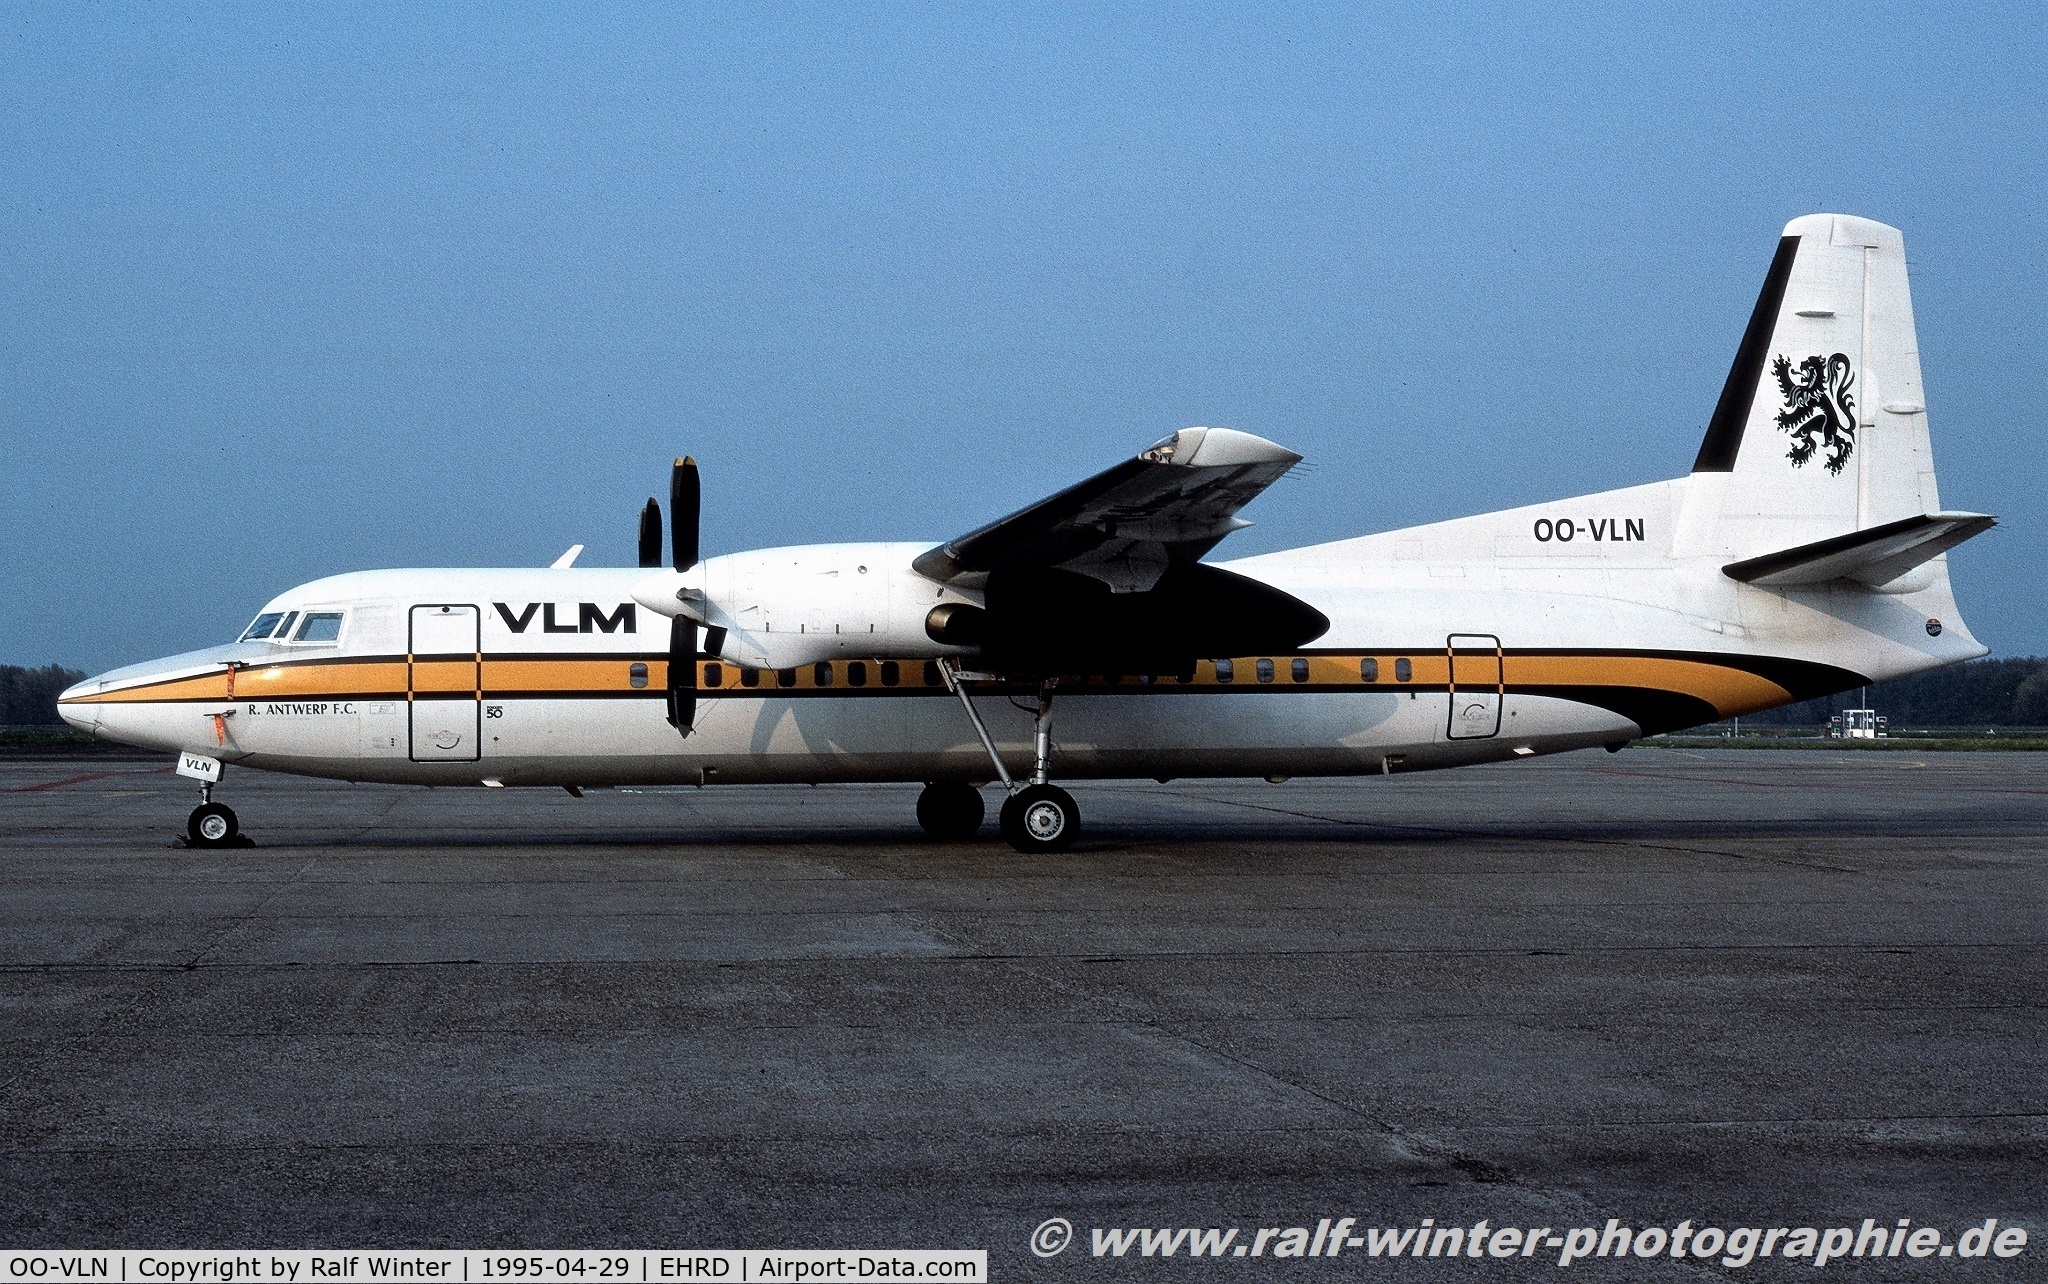 OO-VLN, 1989 Fokker 50 C/N 20145, Fokker 50 F27 Mark 050 - VG VLM VLM Airlines 'R. Antwerp F.C.' - 20145 - OO-VLN - 29.04.1995 - EHRD